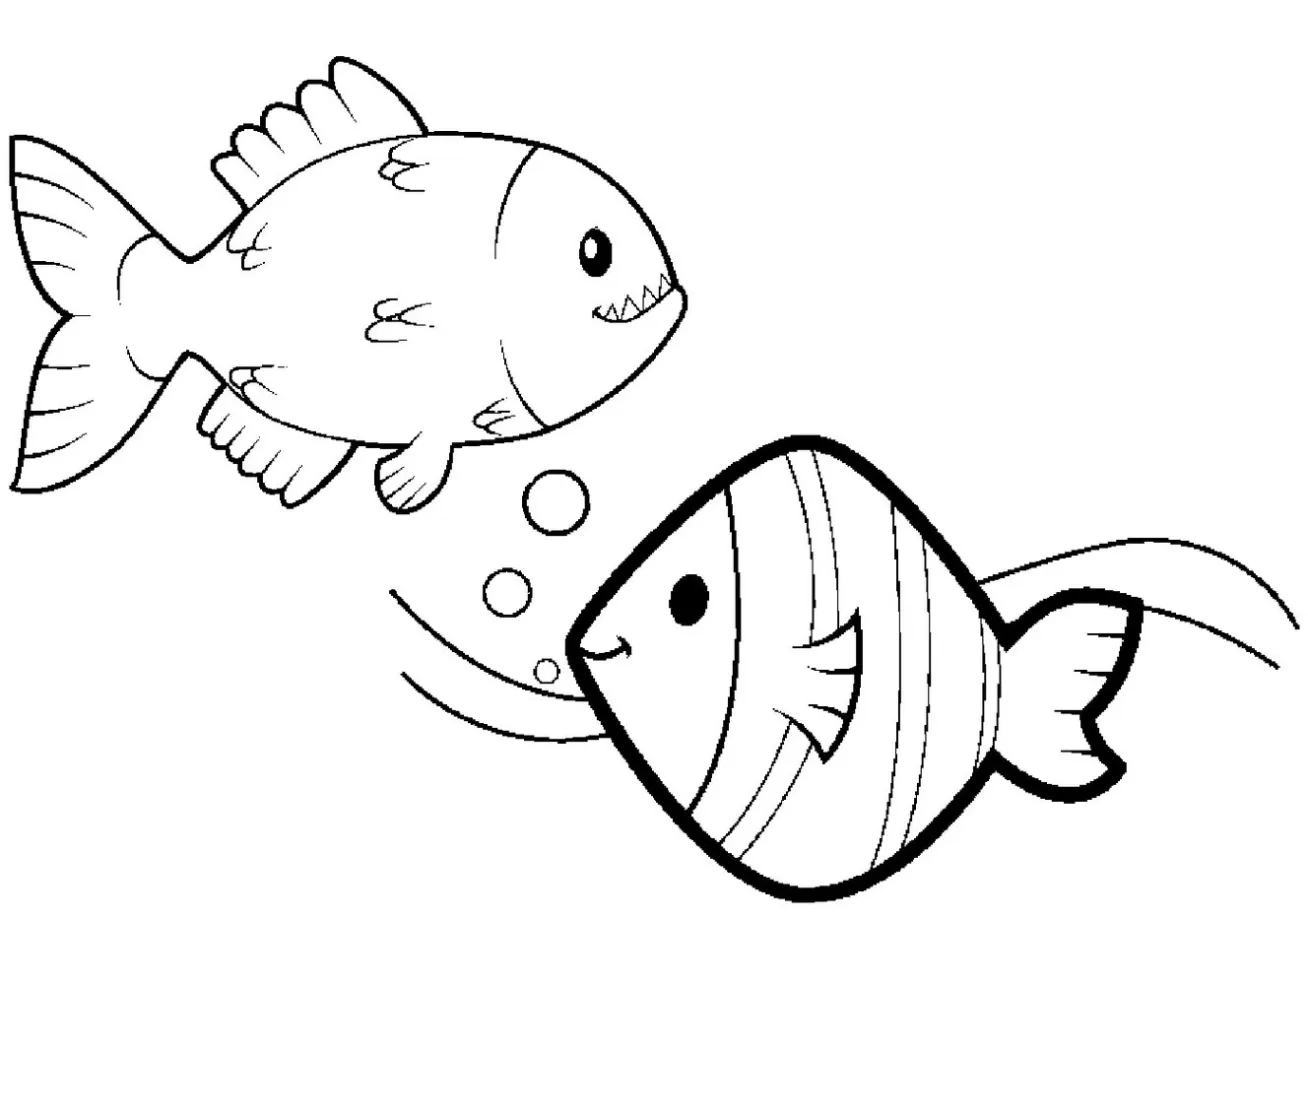 O peixe e a piranha para colorir e pintar